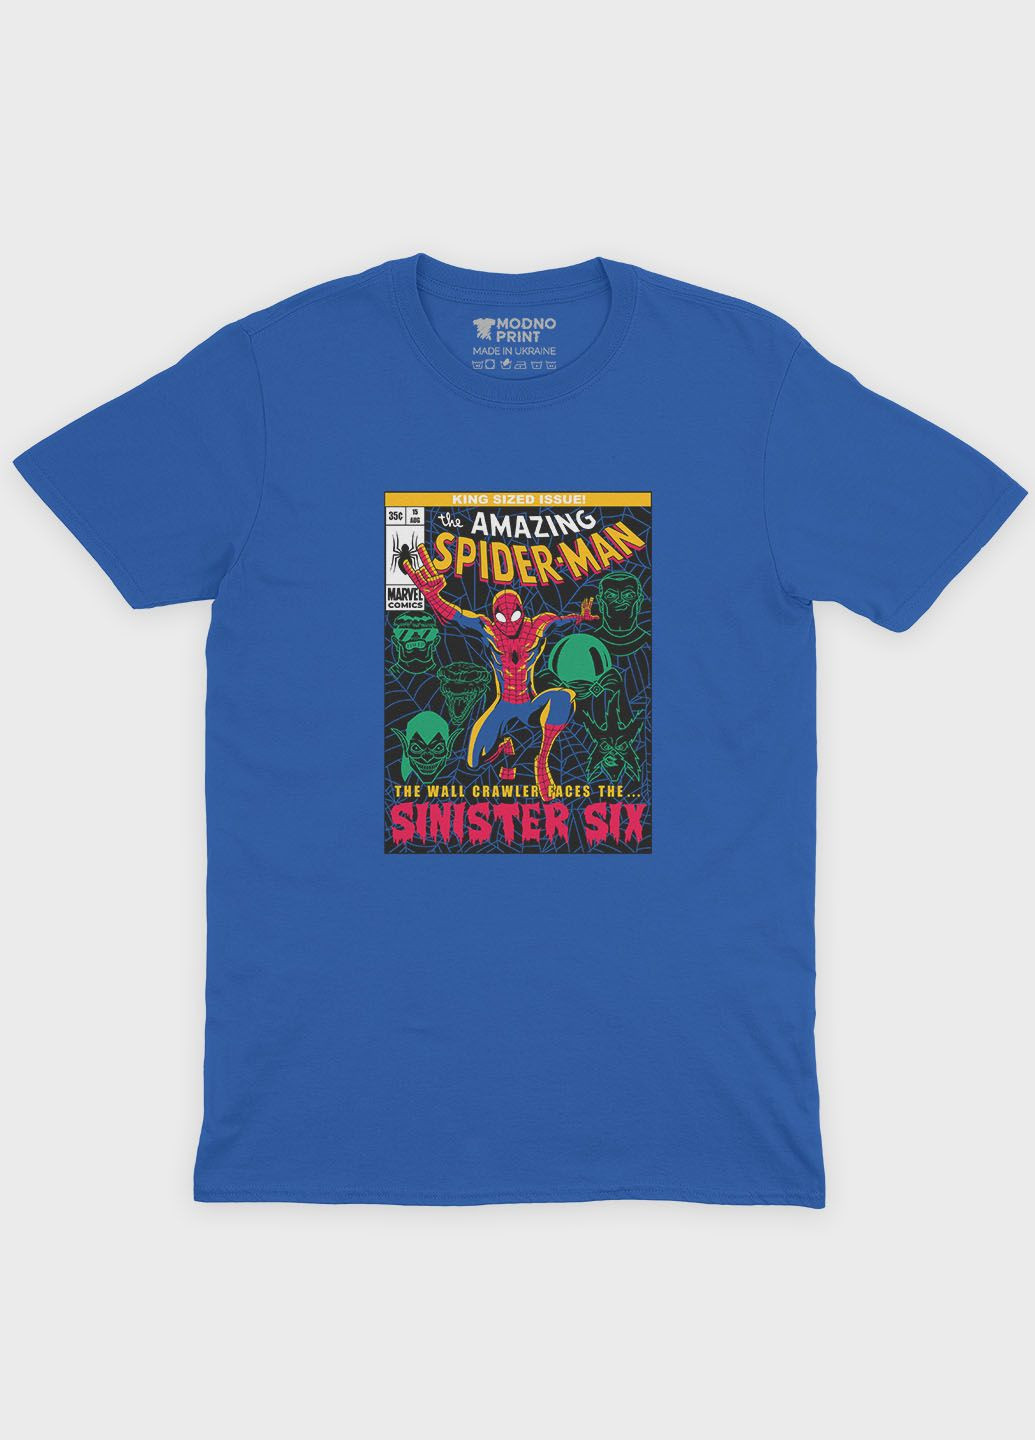 Синяя демисезонная футболка для девочки с принтом супергероя - человек-паук (ts001-1-grr-006-014-082-g) Modno